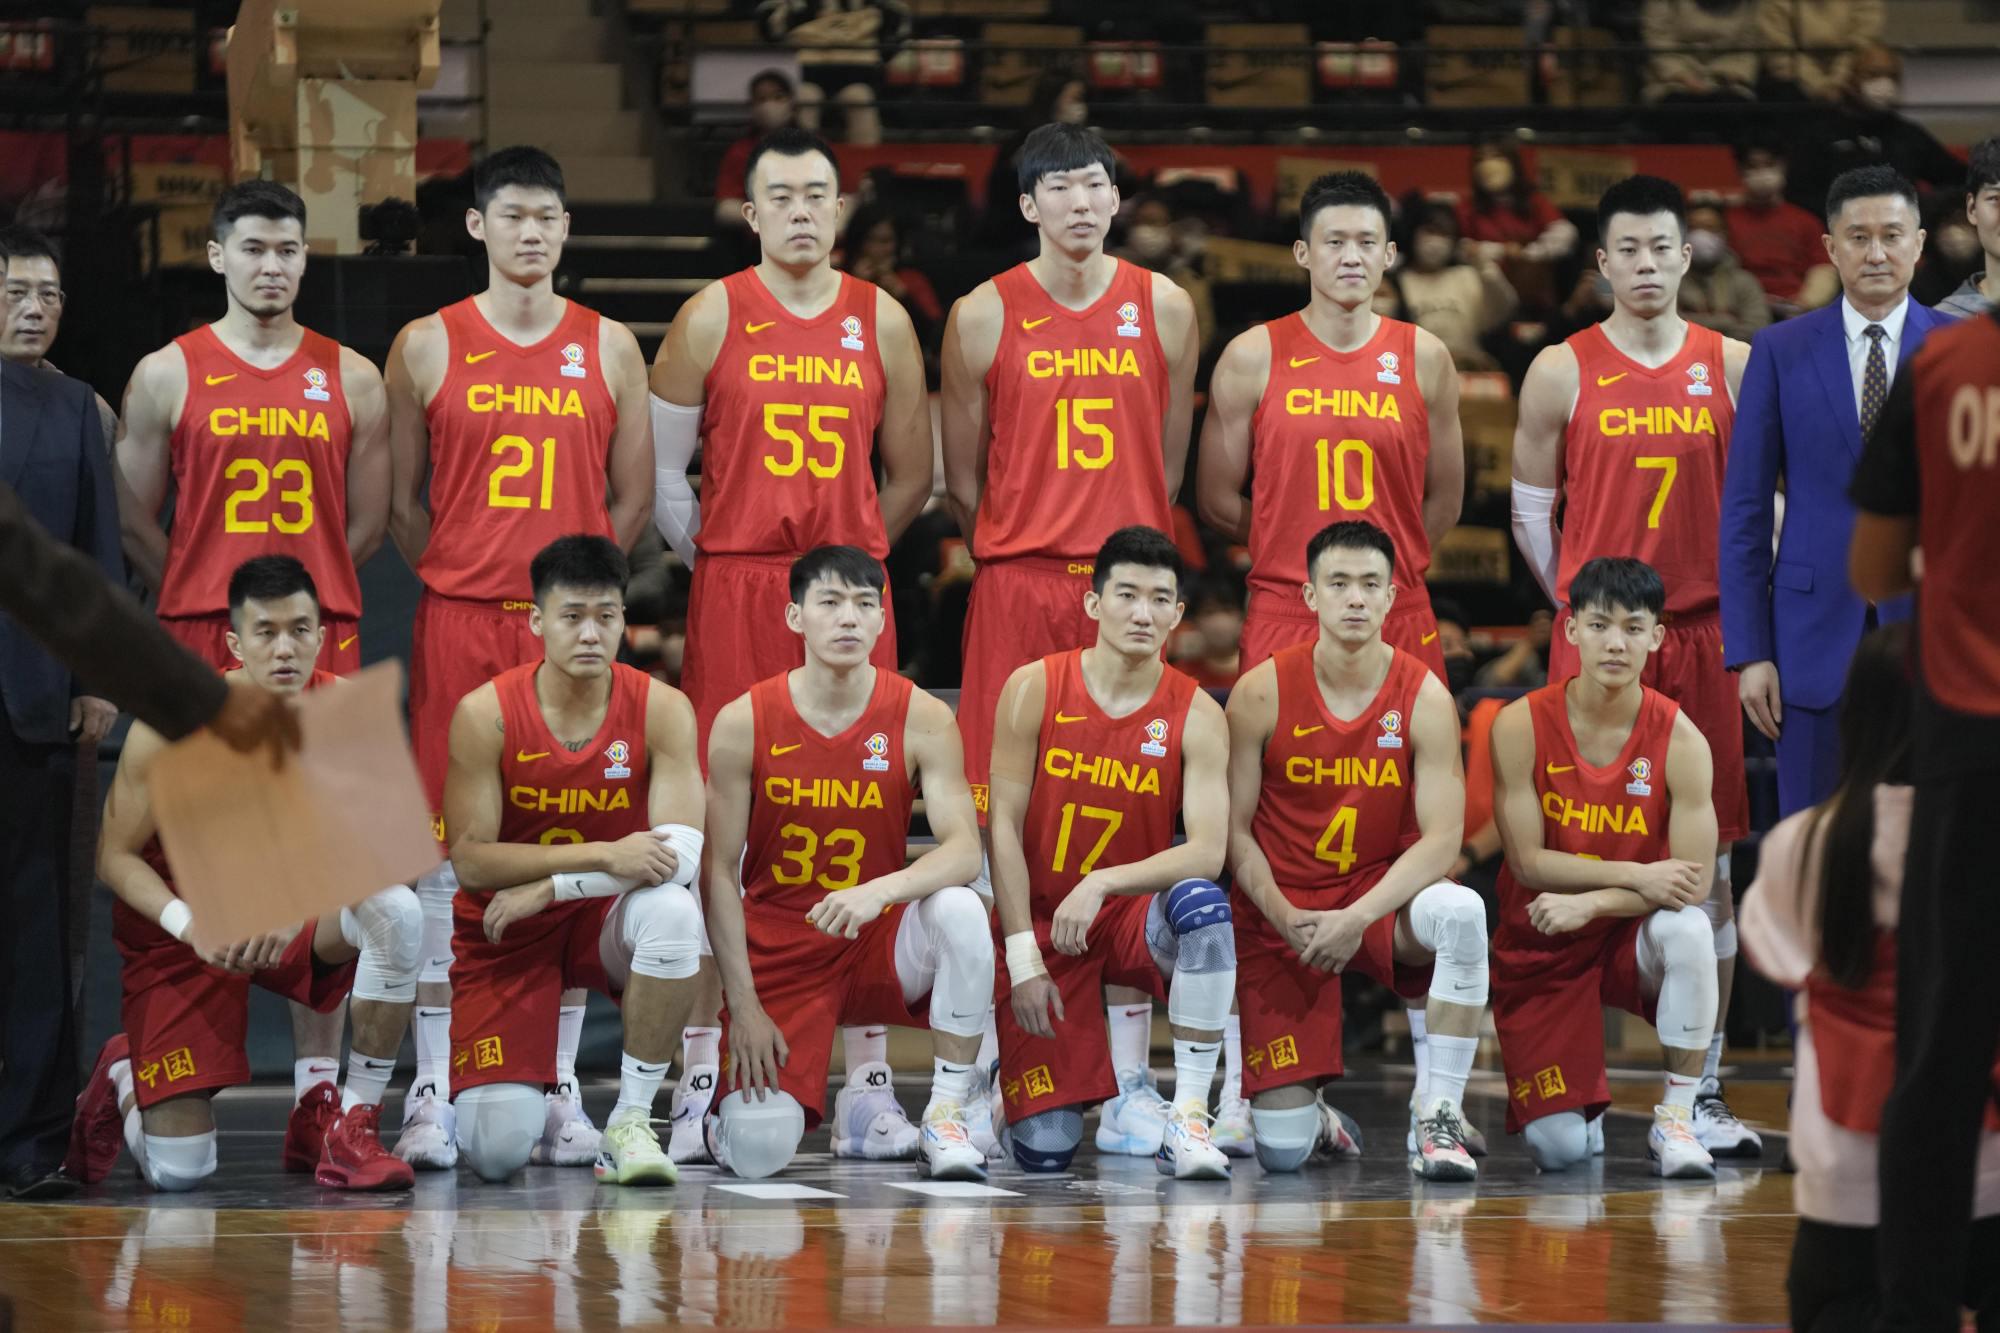 Danh sách các hội trường bóng rổ Trung Quốc đang gây tranh cãi: Yao Mingmu Tiezhu không được liệt kê, Gong Xiaobin đã bất ngờ được chọn (3)